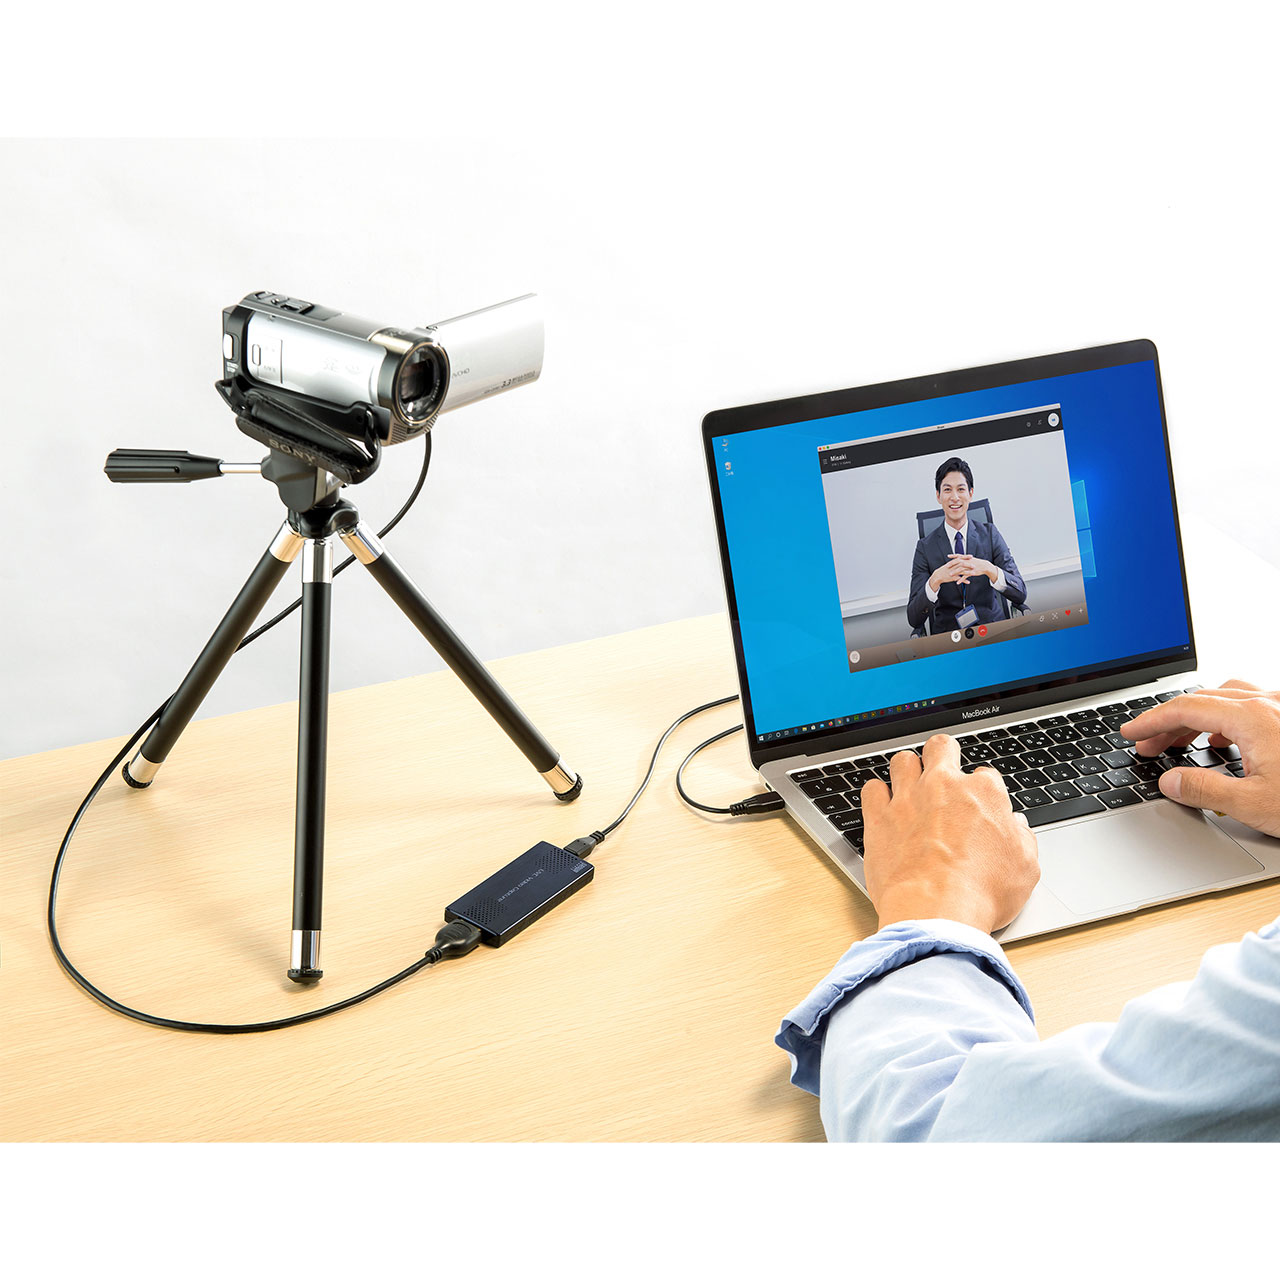 ビデオカメラやデジタルカメラをwebカメラ化できるusb Hdmi変換アダプタを発売 サンワサプライ株式会社